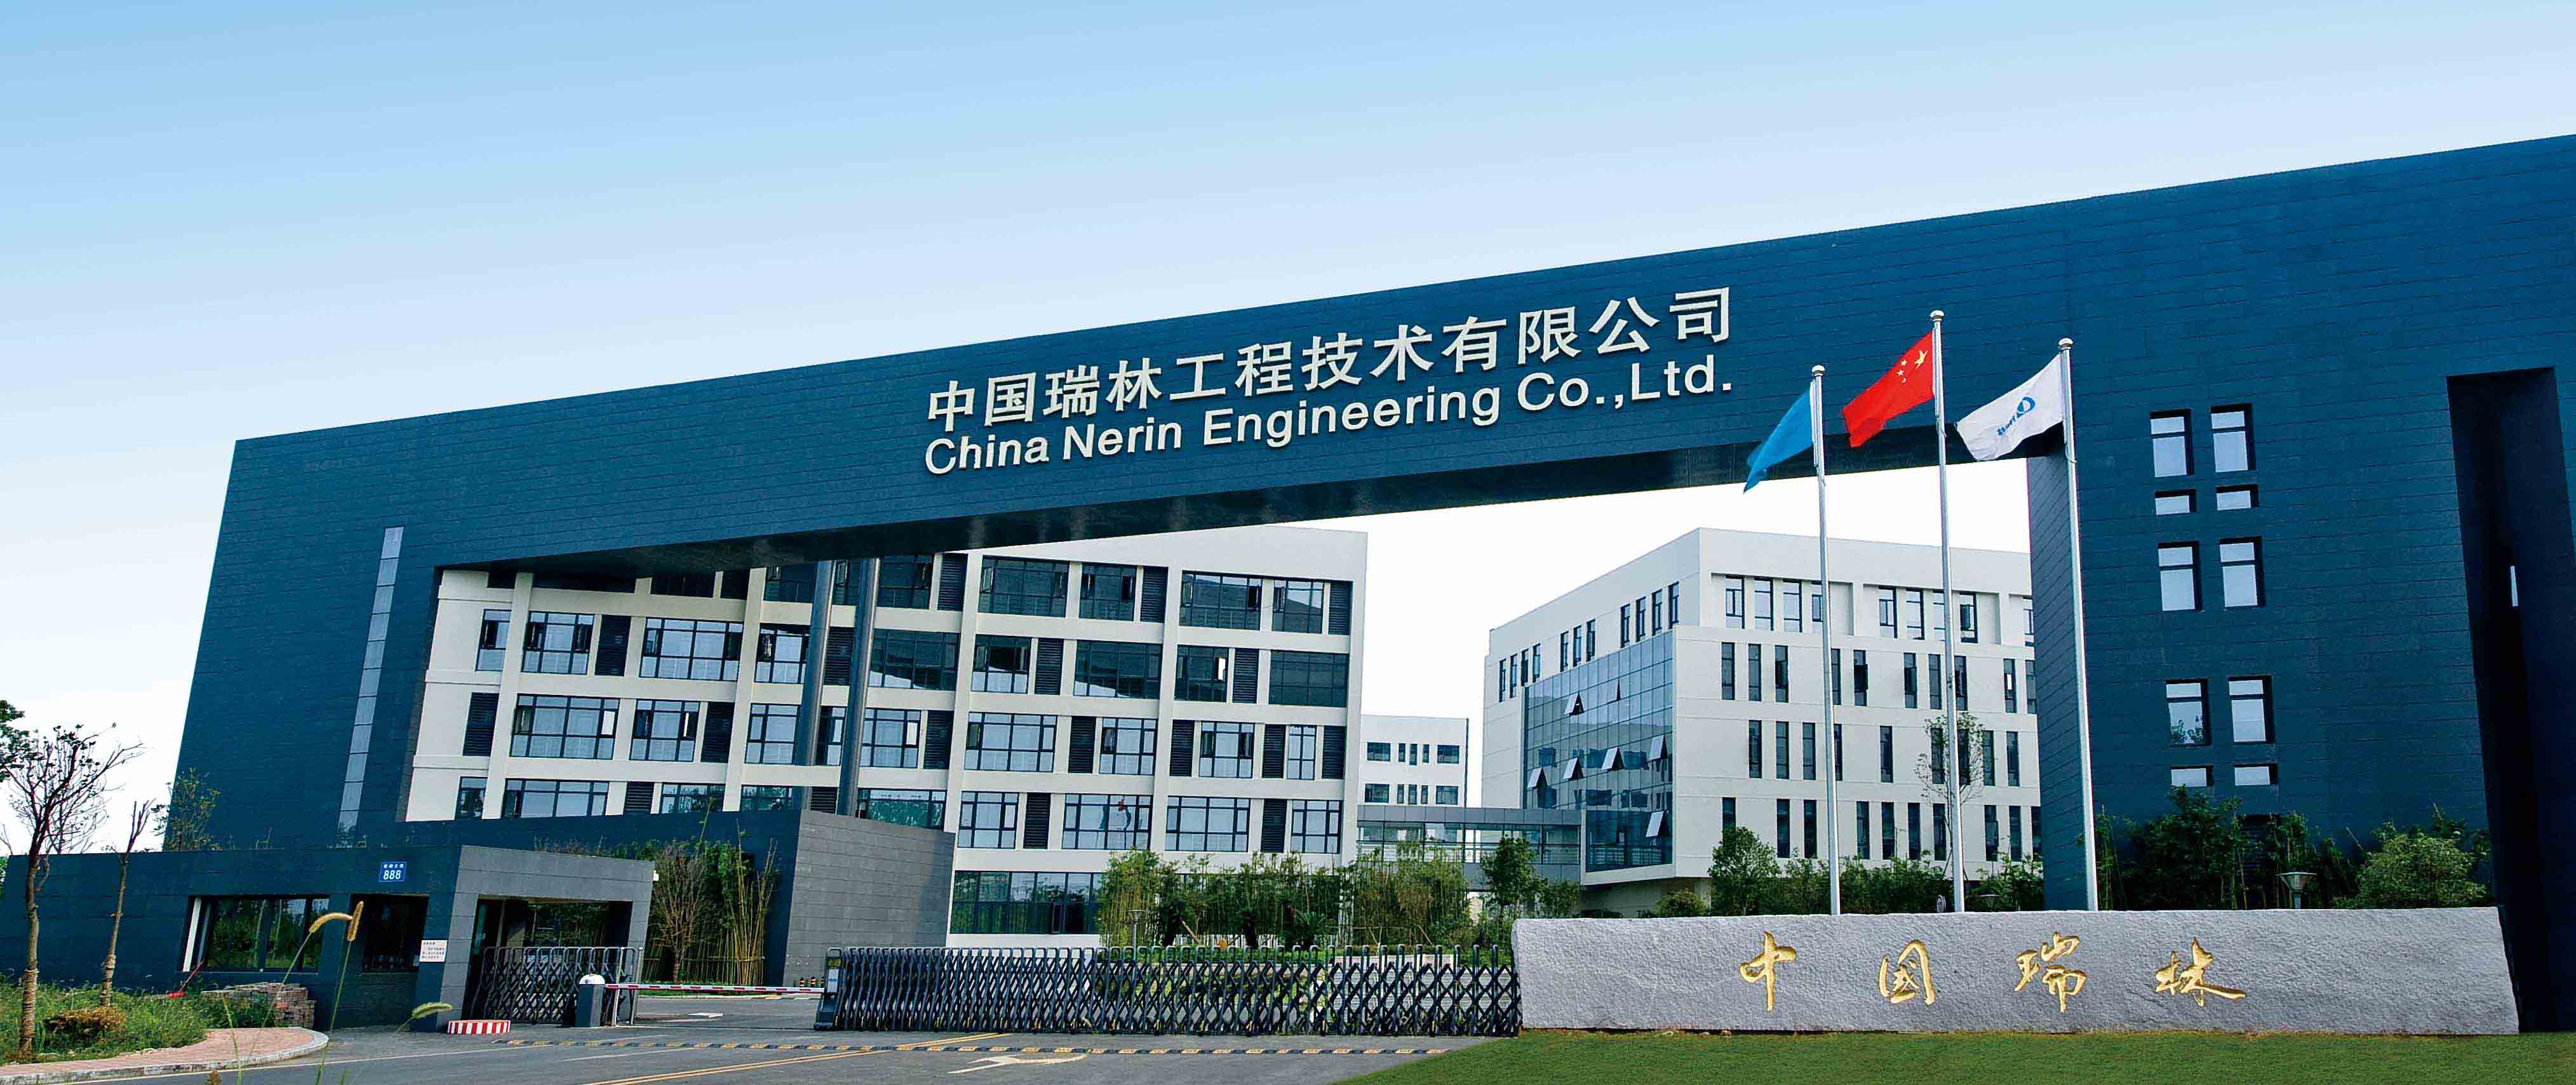 中国瑞林工程技术股份有限公司